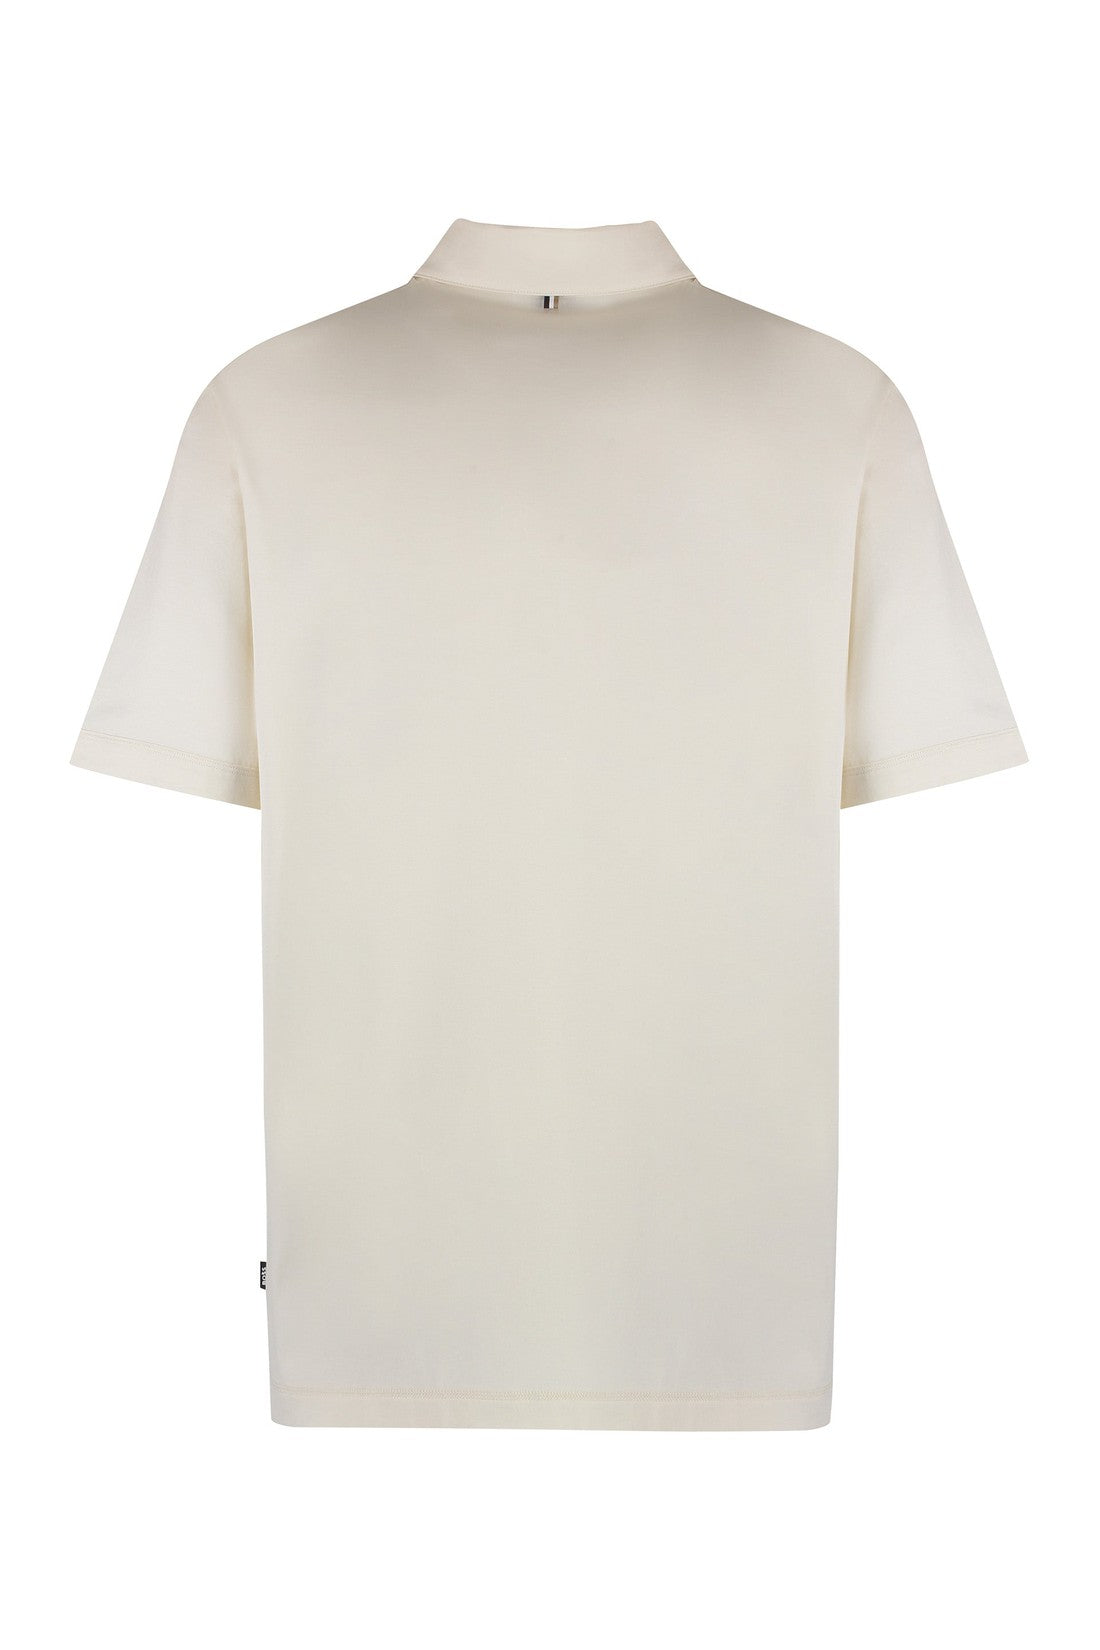 BOSS-OUTLET-SALE-Blend cotton polo shirt-ARCHIVIST